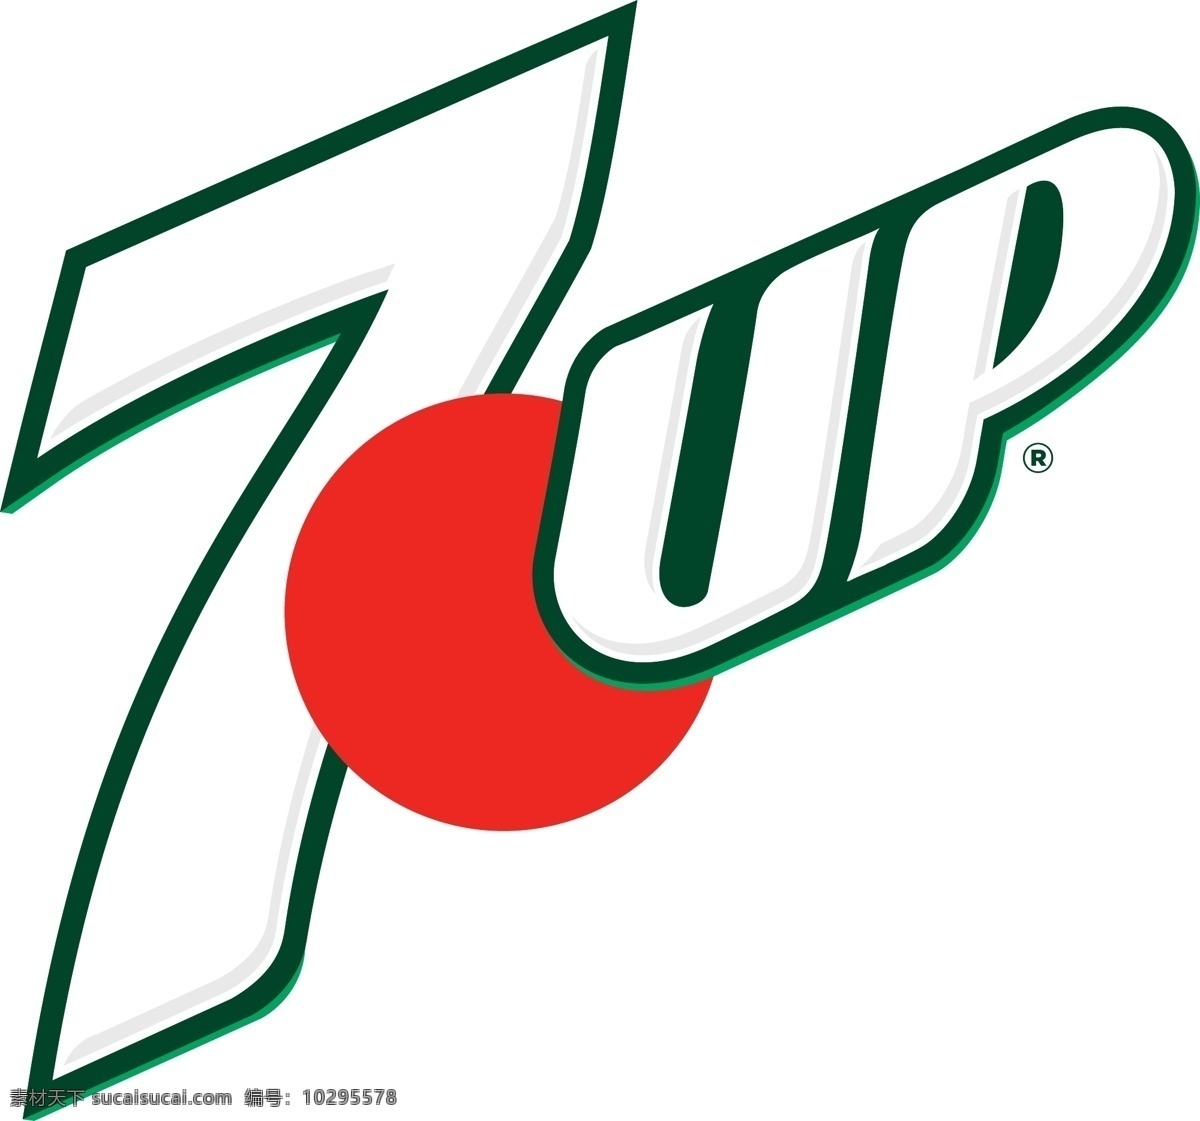 七喜logo 七喜 logo 7up 饮料 汽水 冒泡 柠檬 饮品 超市 标志图标 企业 标志